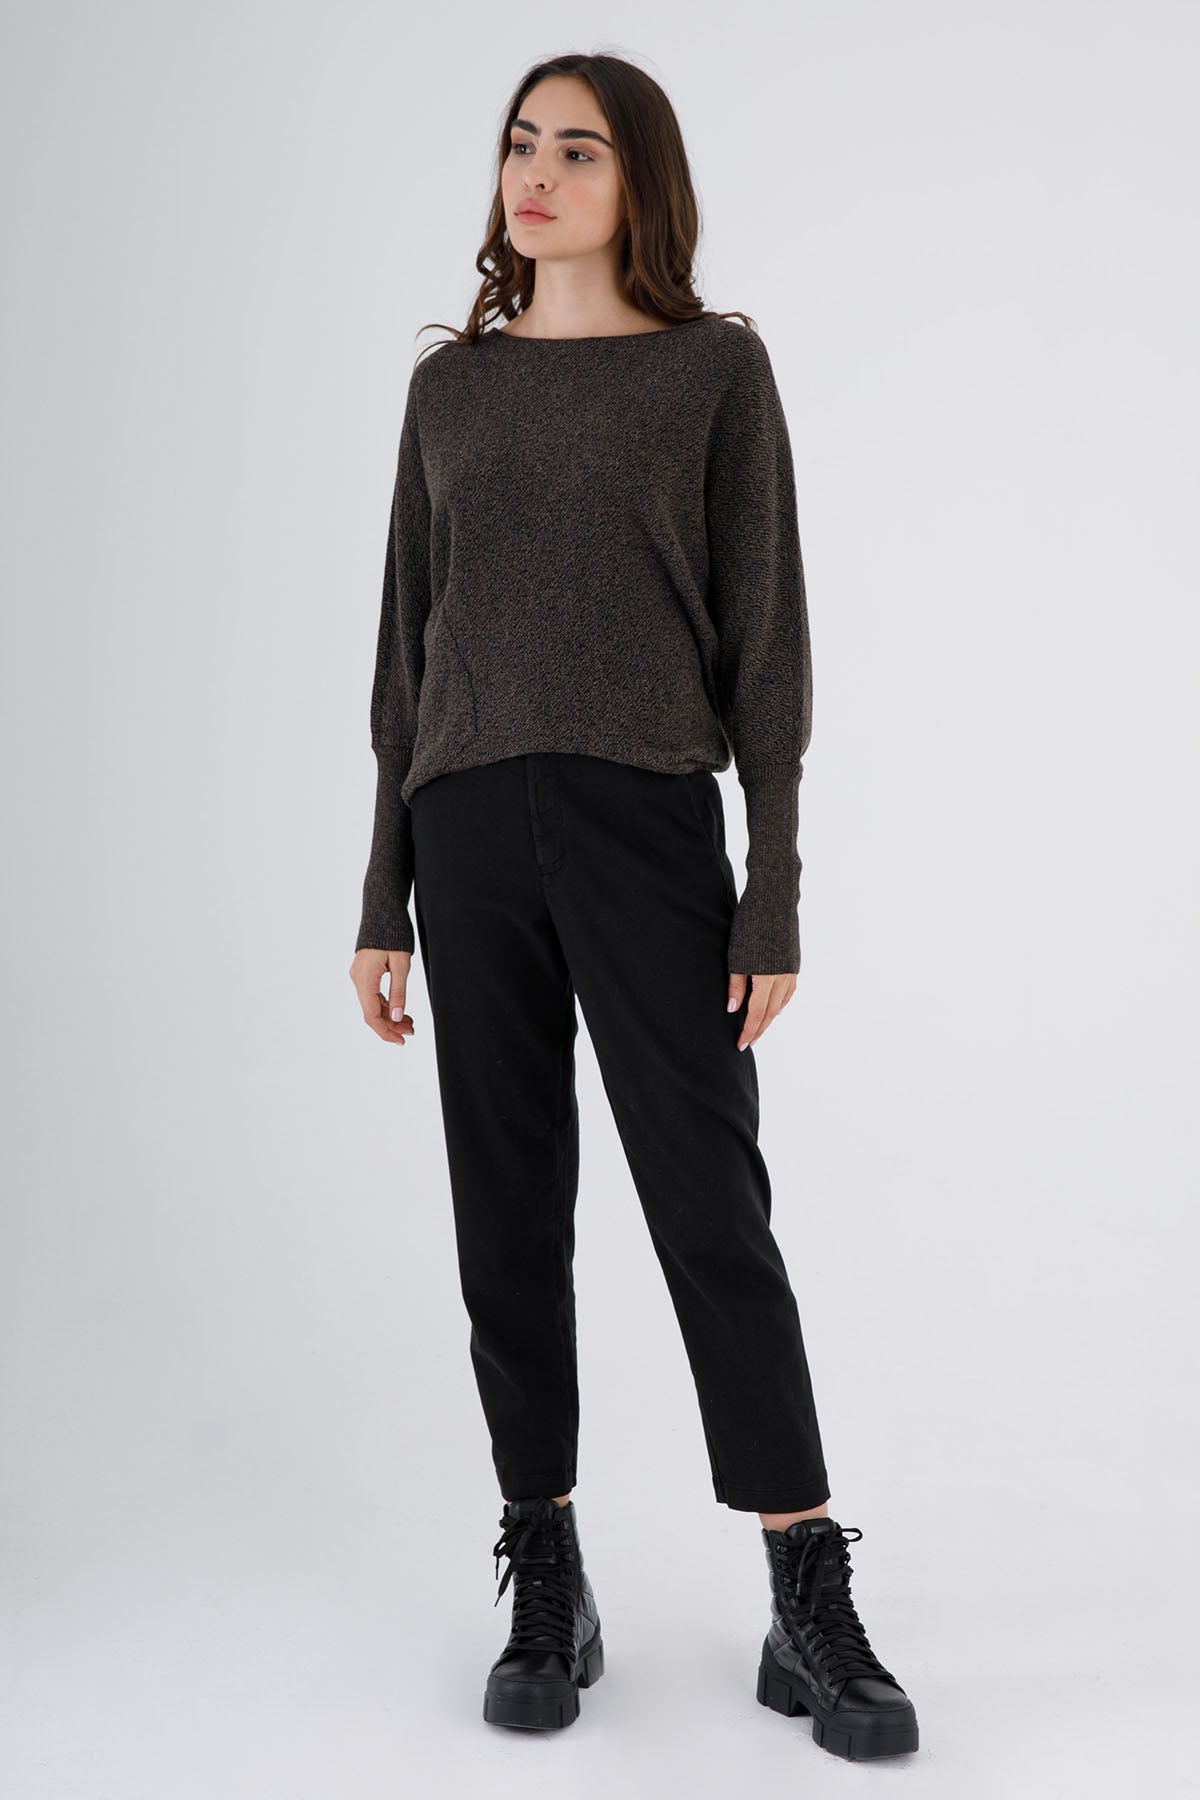 Transit Yüksek Bel Streç Pantolon-Libas Trendy Fashion Store